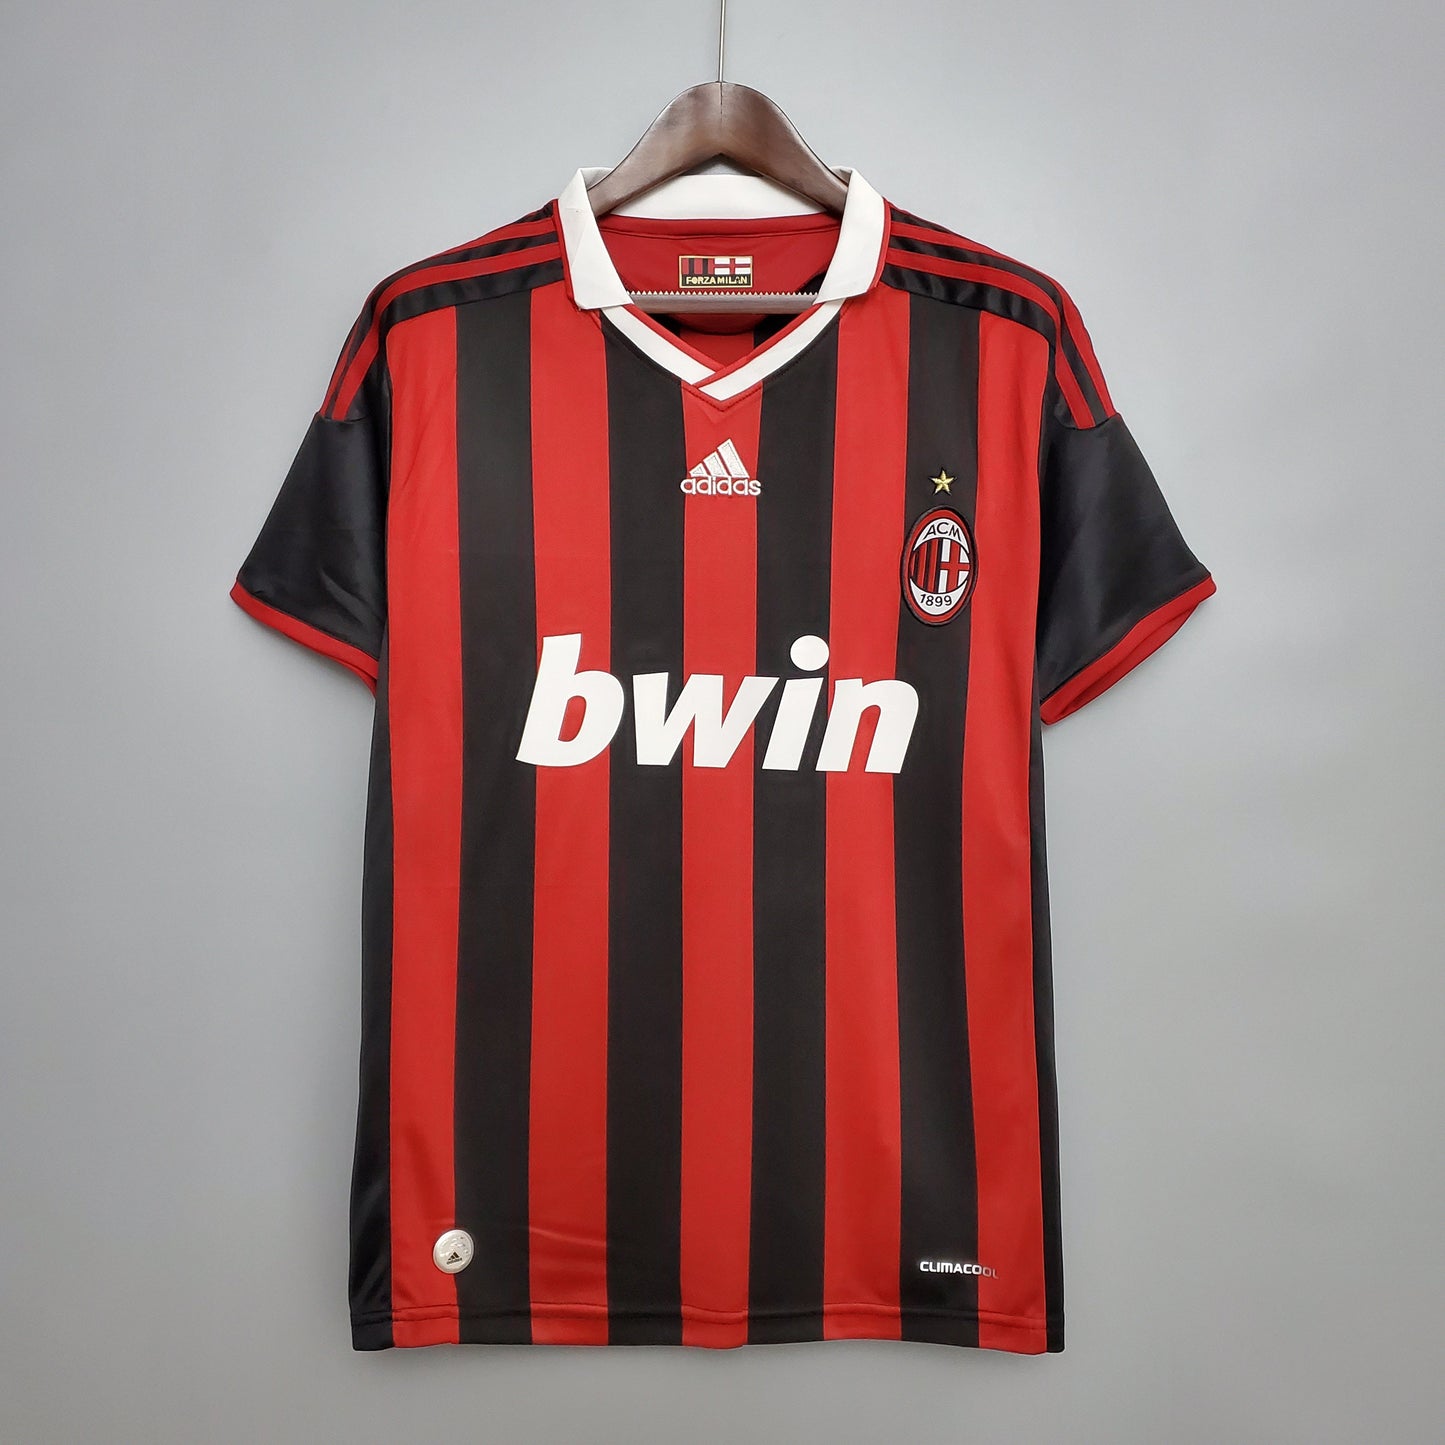 AC Milan Home Kit 09/10